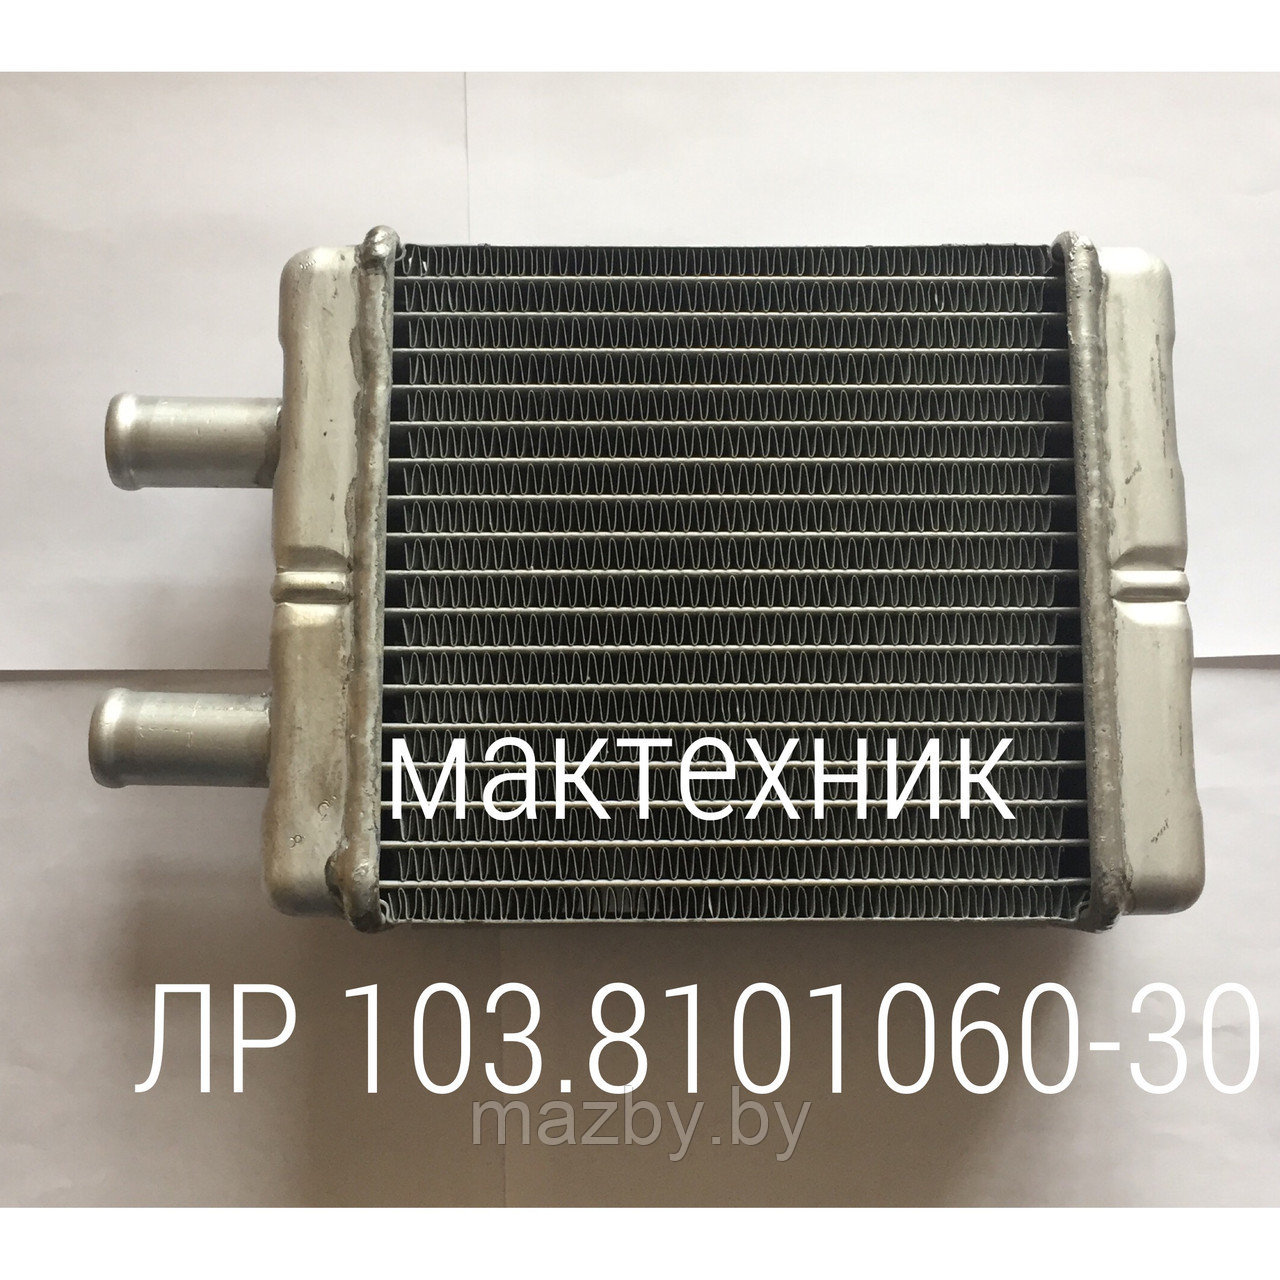 ЛР 103.8101060-30 радиатор отопителя автобус МАЗ  ( 103-8101060-30 )